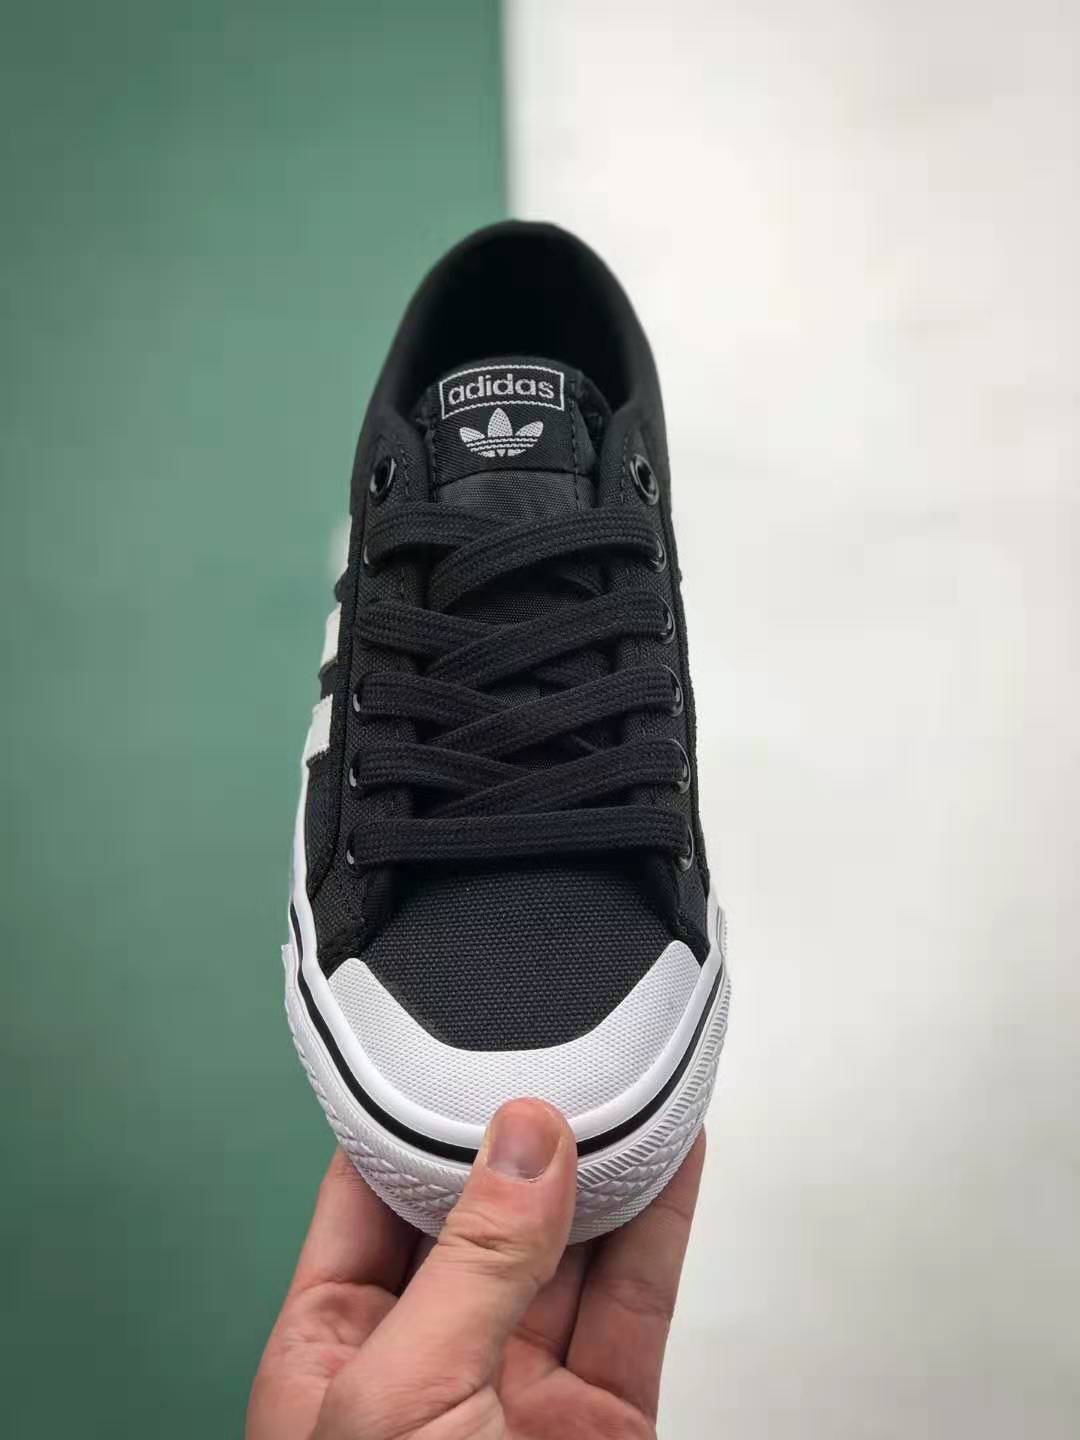 Adidas Nizza Black White CQ2332 - Sleek and Stylish Casual Shoes